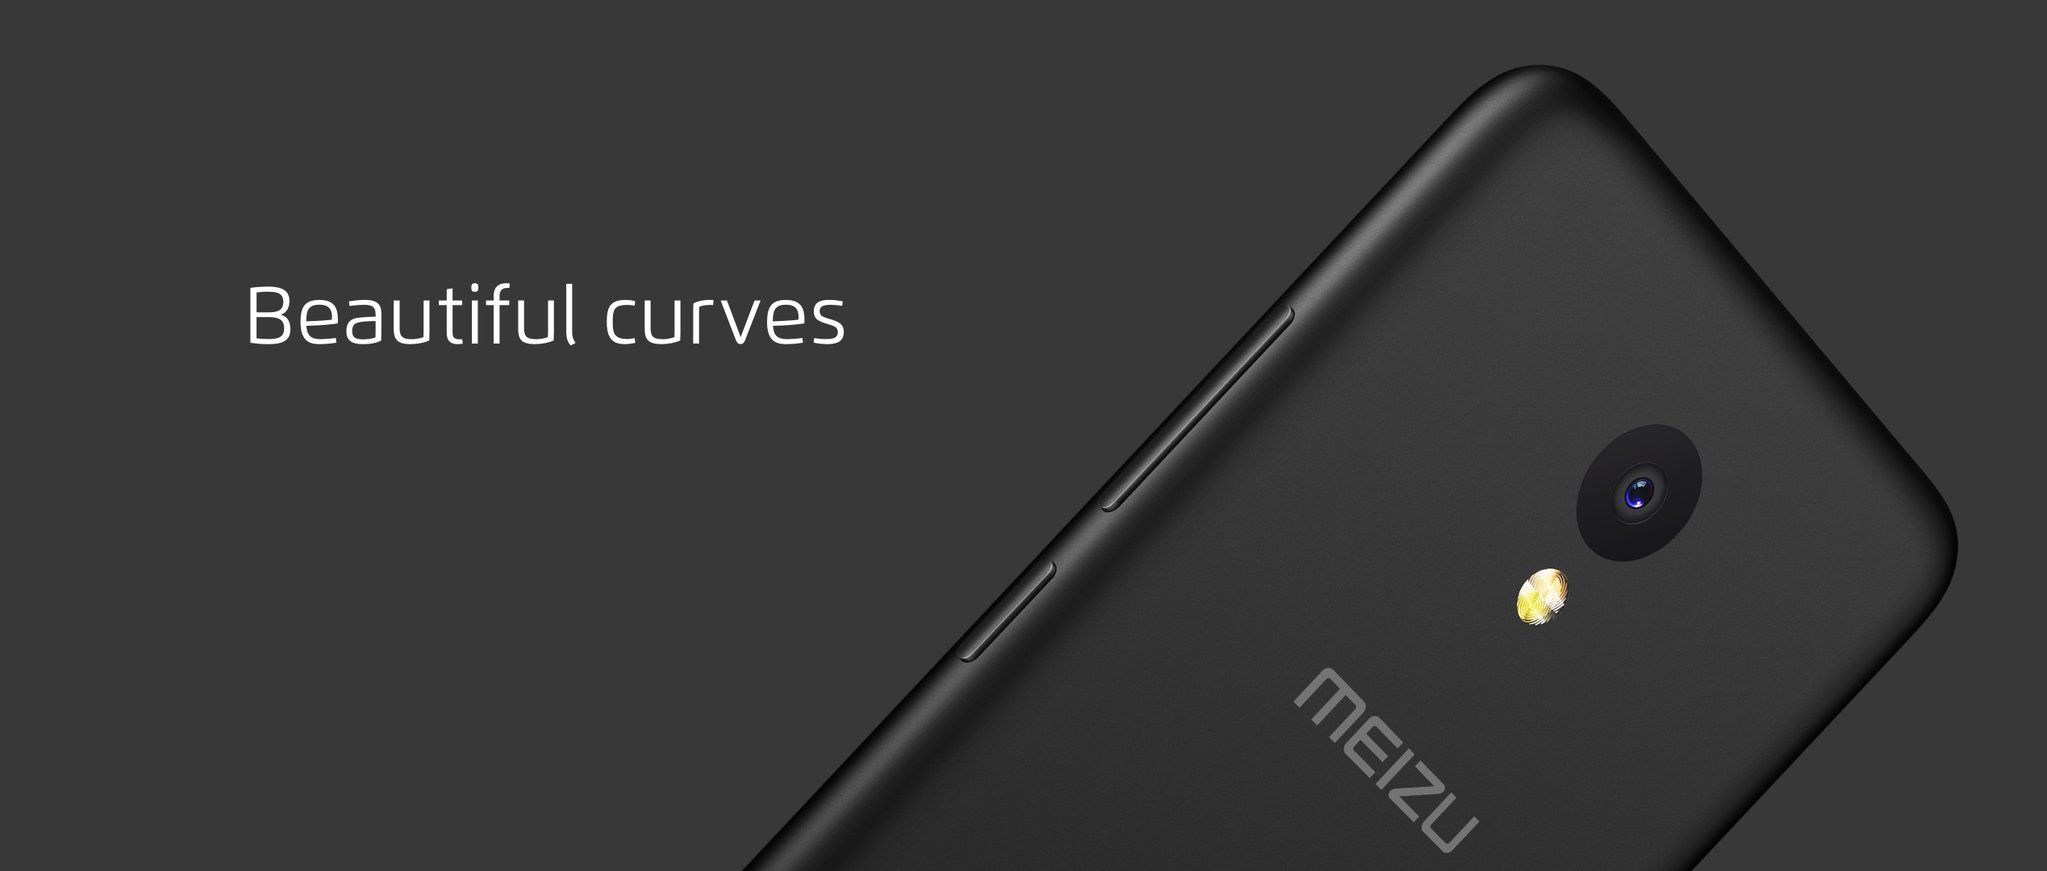 Бюджетный Meizu m5c представлен официально